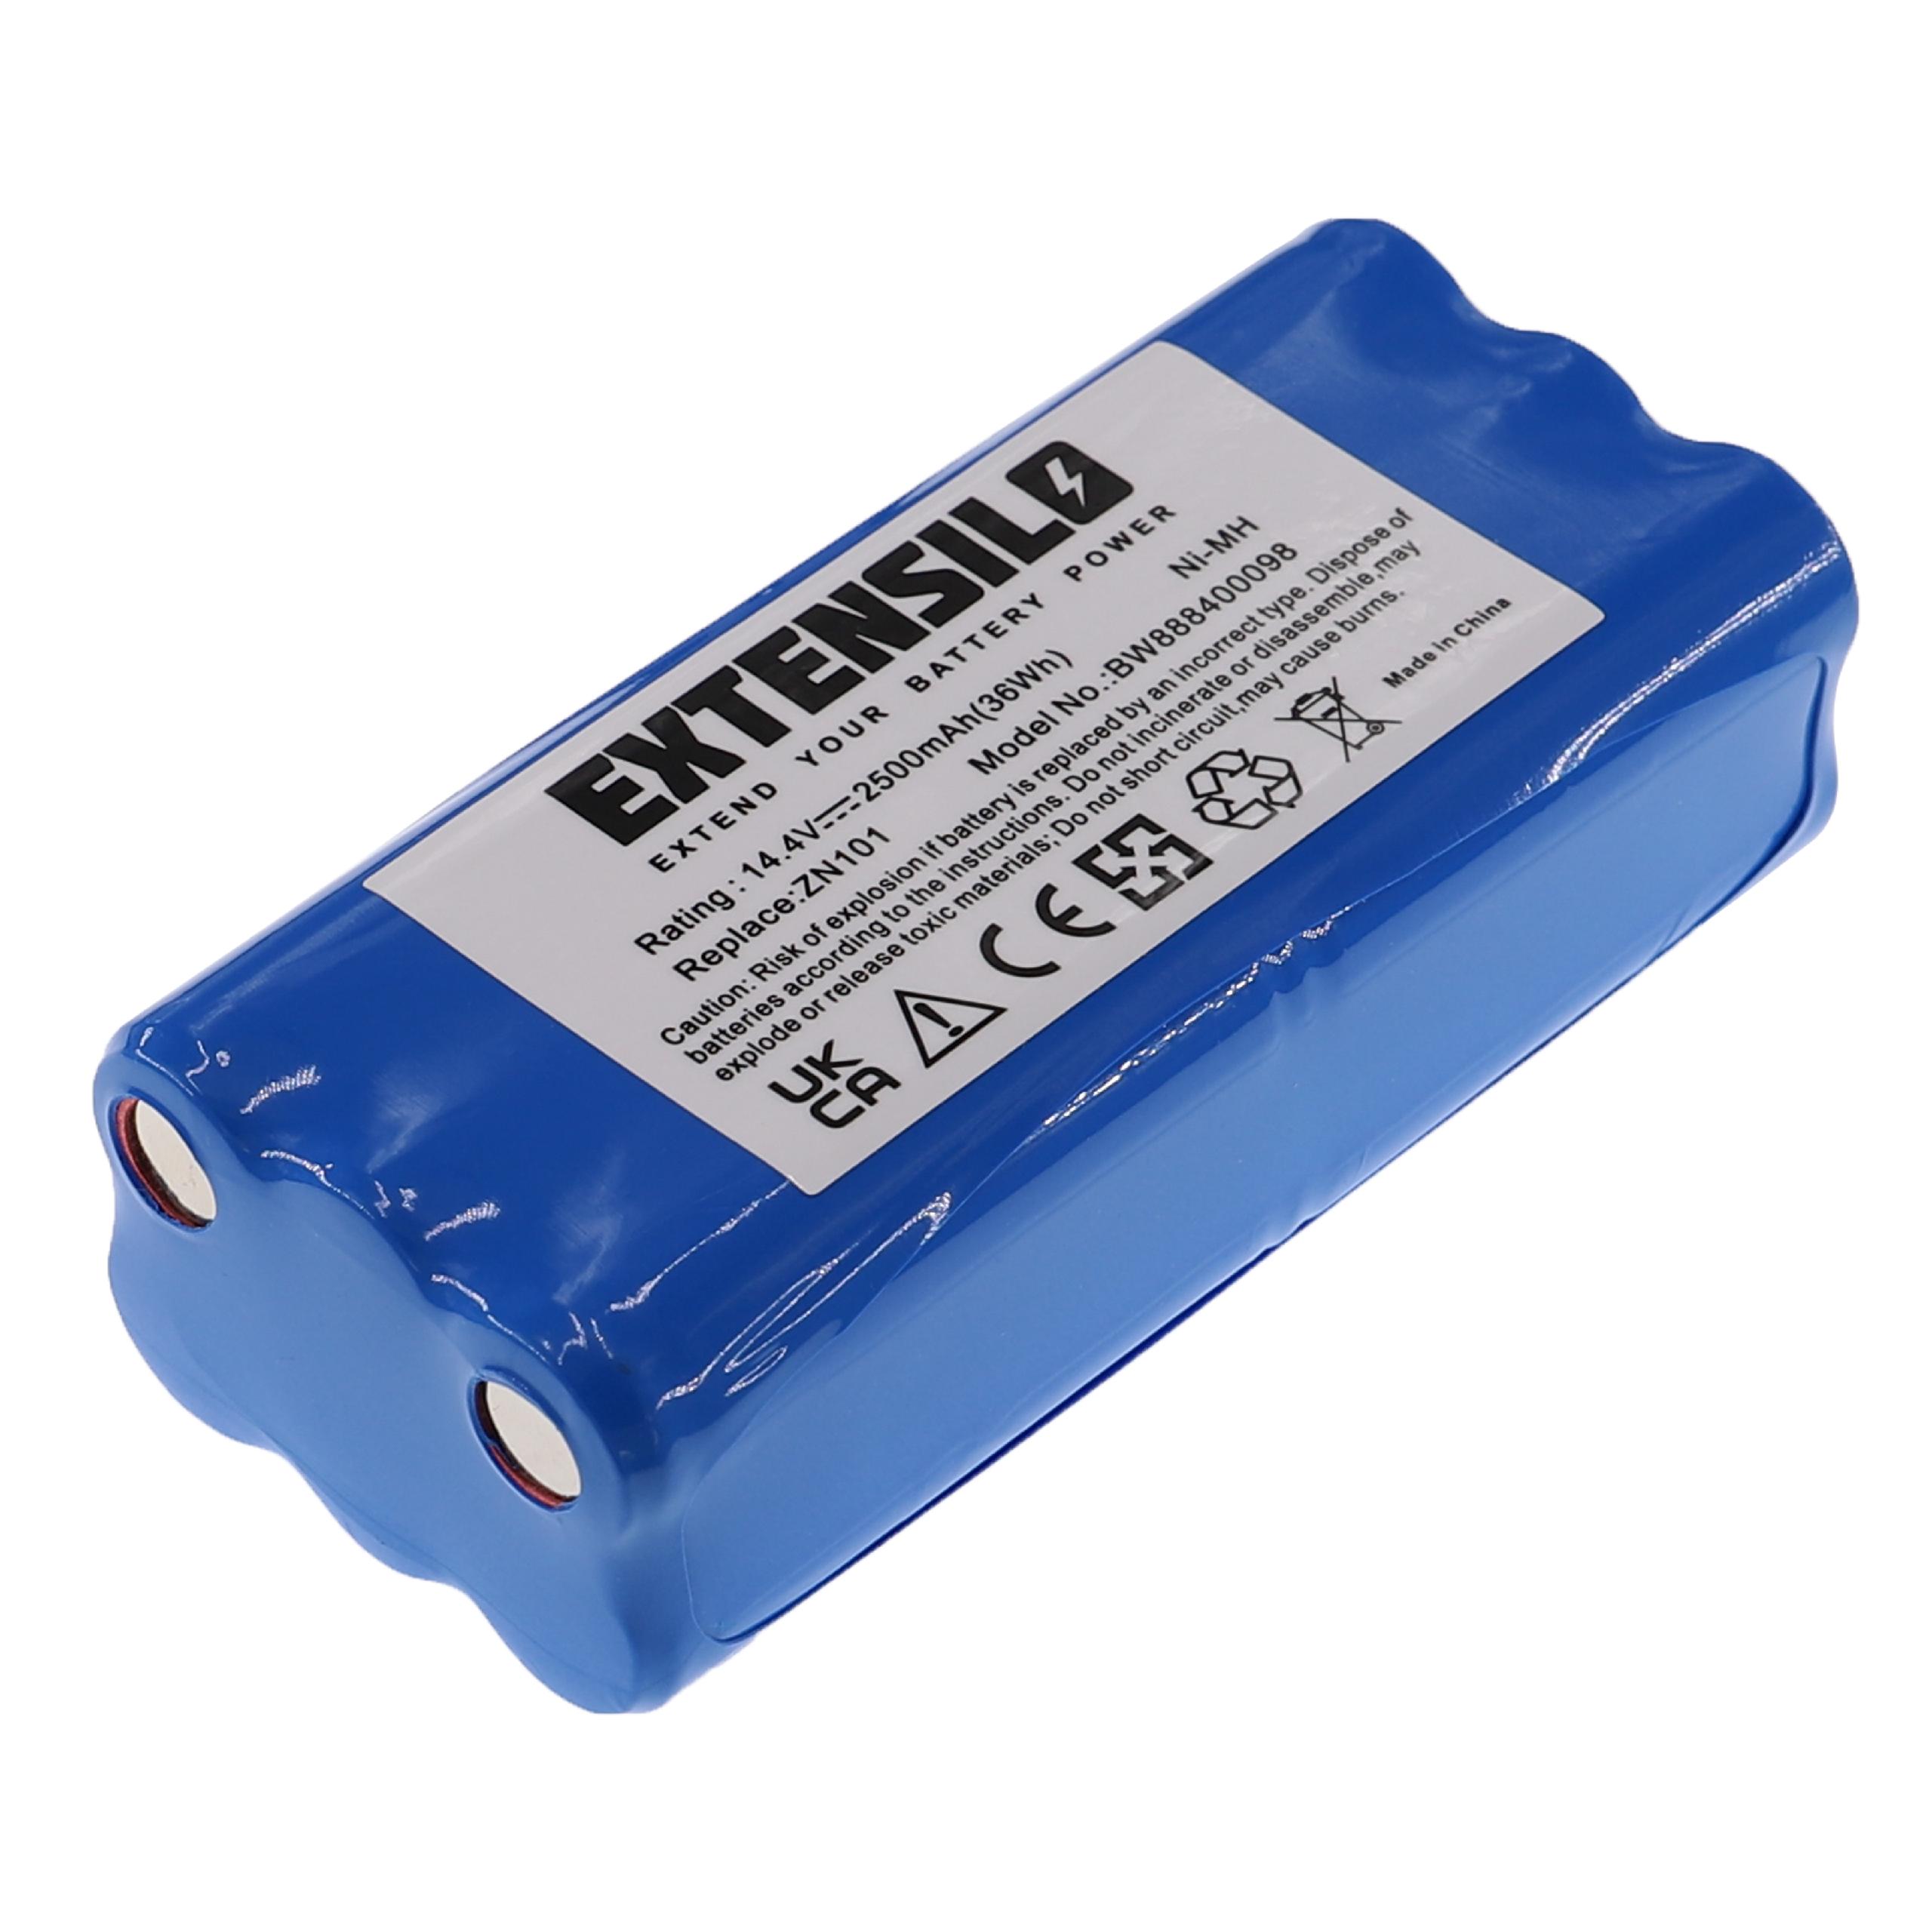 Batterie remplace Dirt Devil R1-L051B, 0606004 pour robot aspirateur - 2500mAh 14,4V NiMH